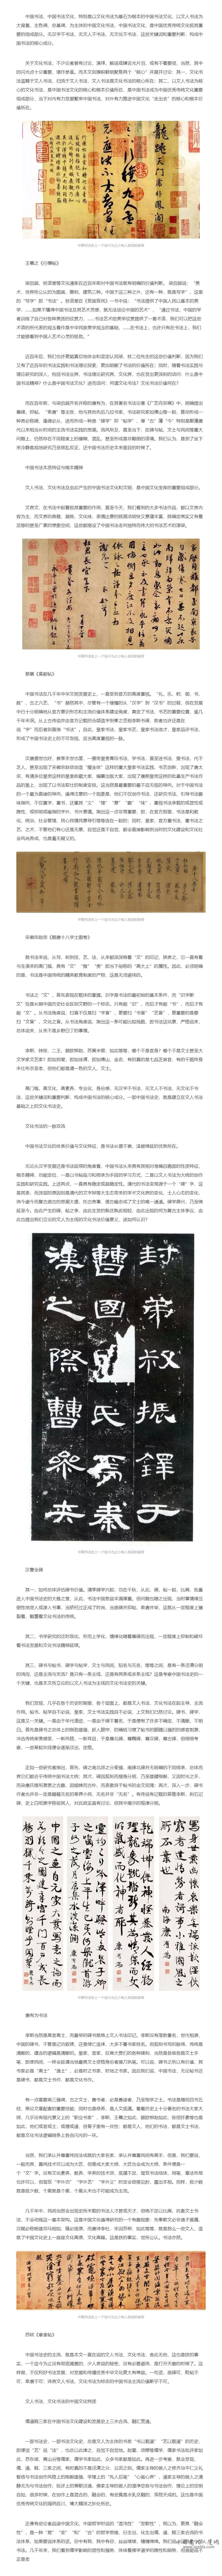 中国书法史上一个迄今为止少有人言说的秘密.jpg